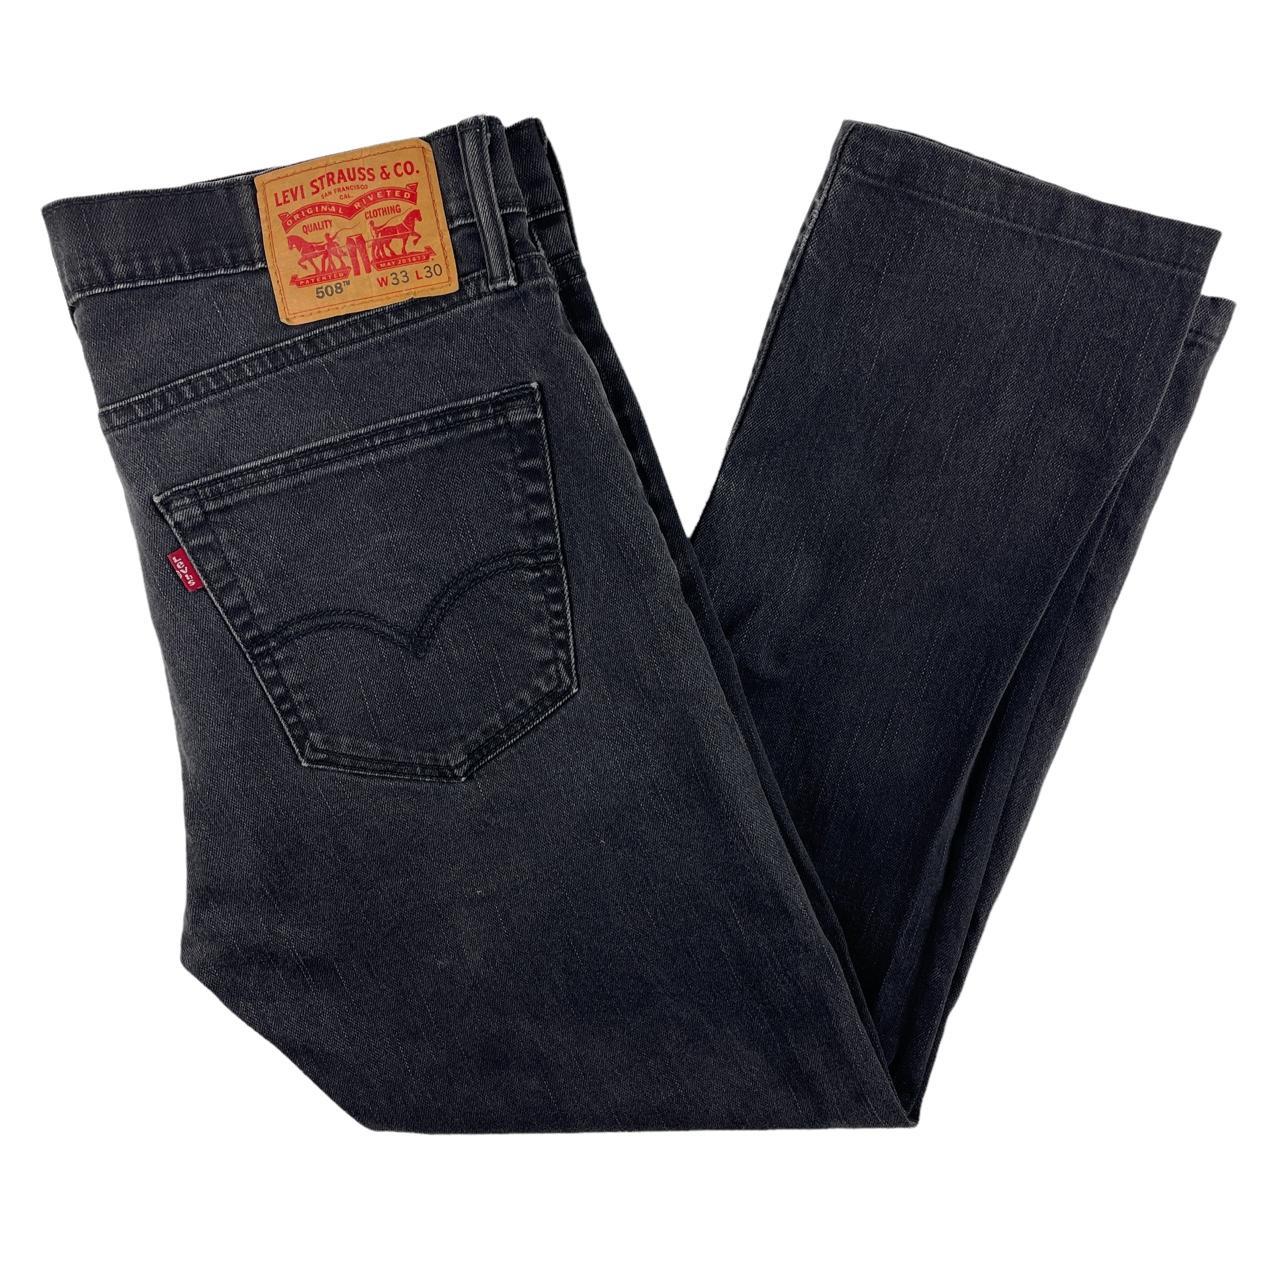 Vintage Levi’s 508 Tapered Fit Jeans Black 33” x... - Depop